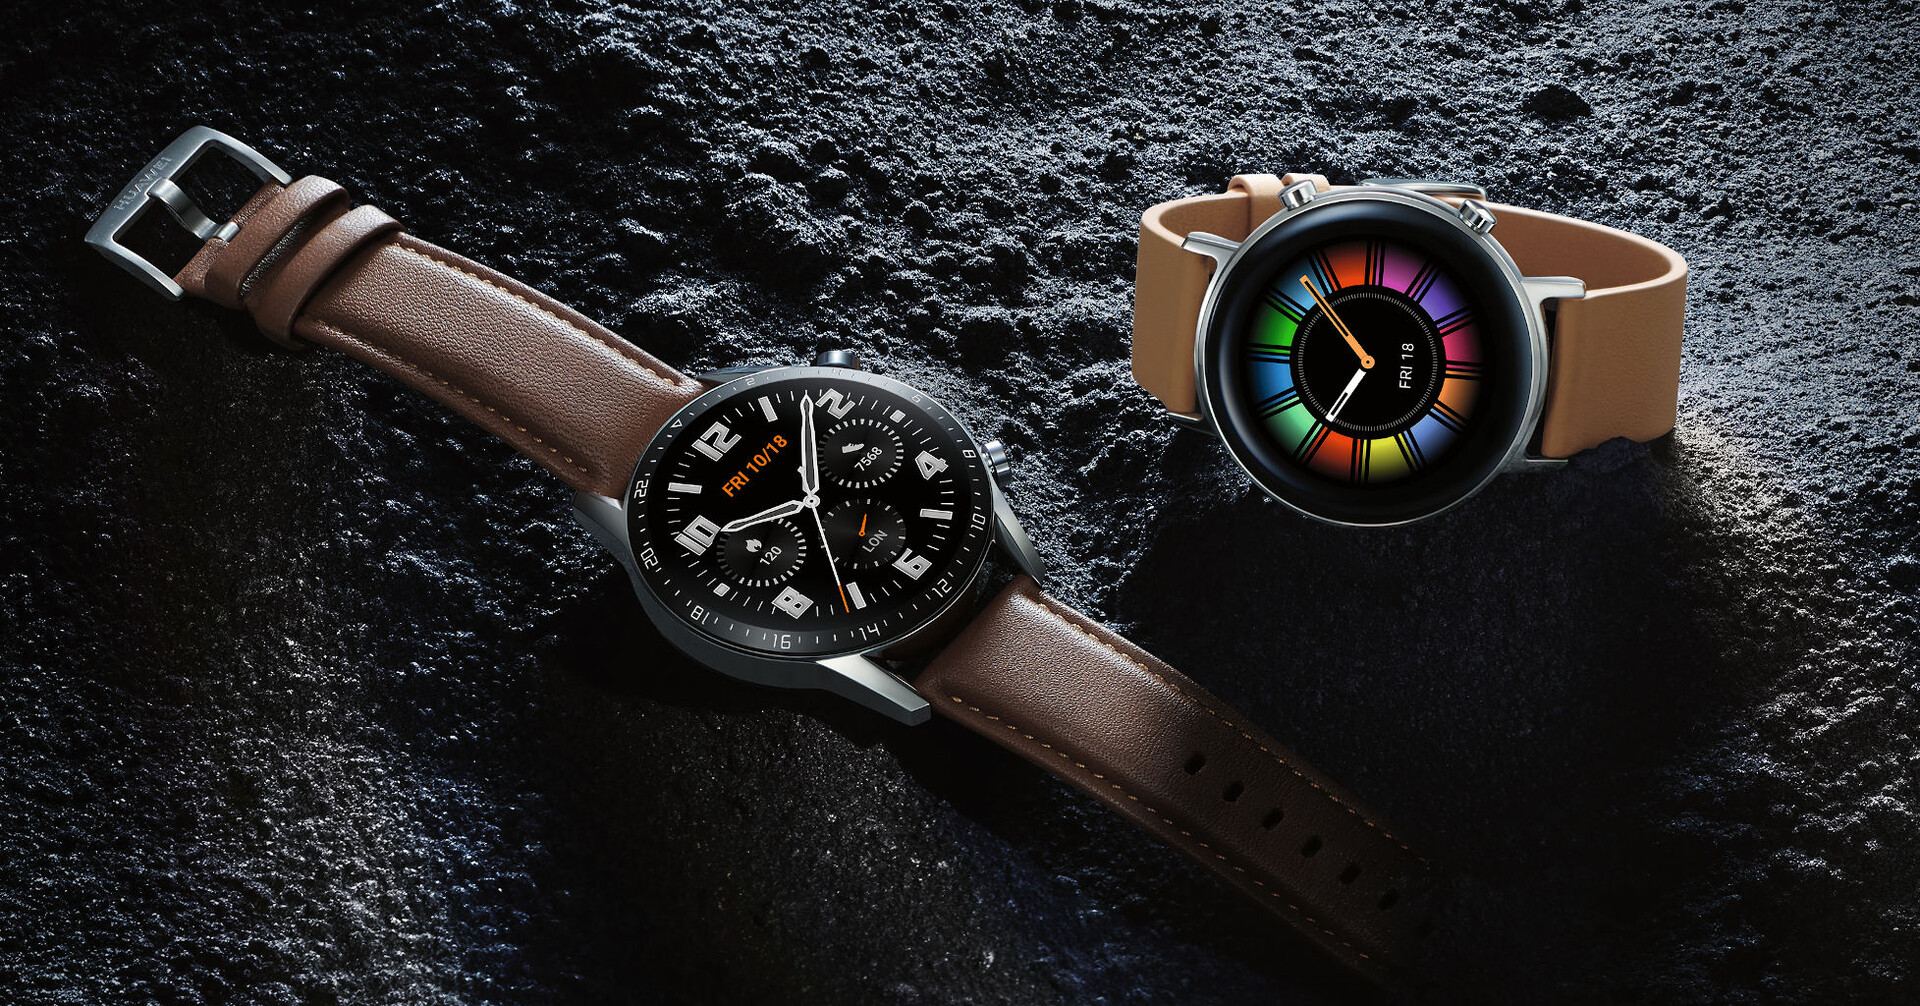 Les montres intelligentes Huawei Watch GT 2 et Watch GT 2e reçoivent une mise à jour pour permettre le téléchargement d'applications tierces